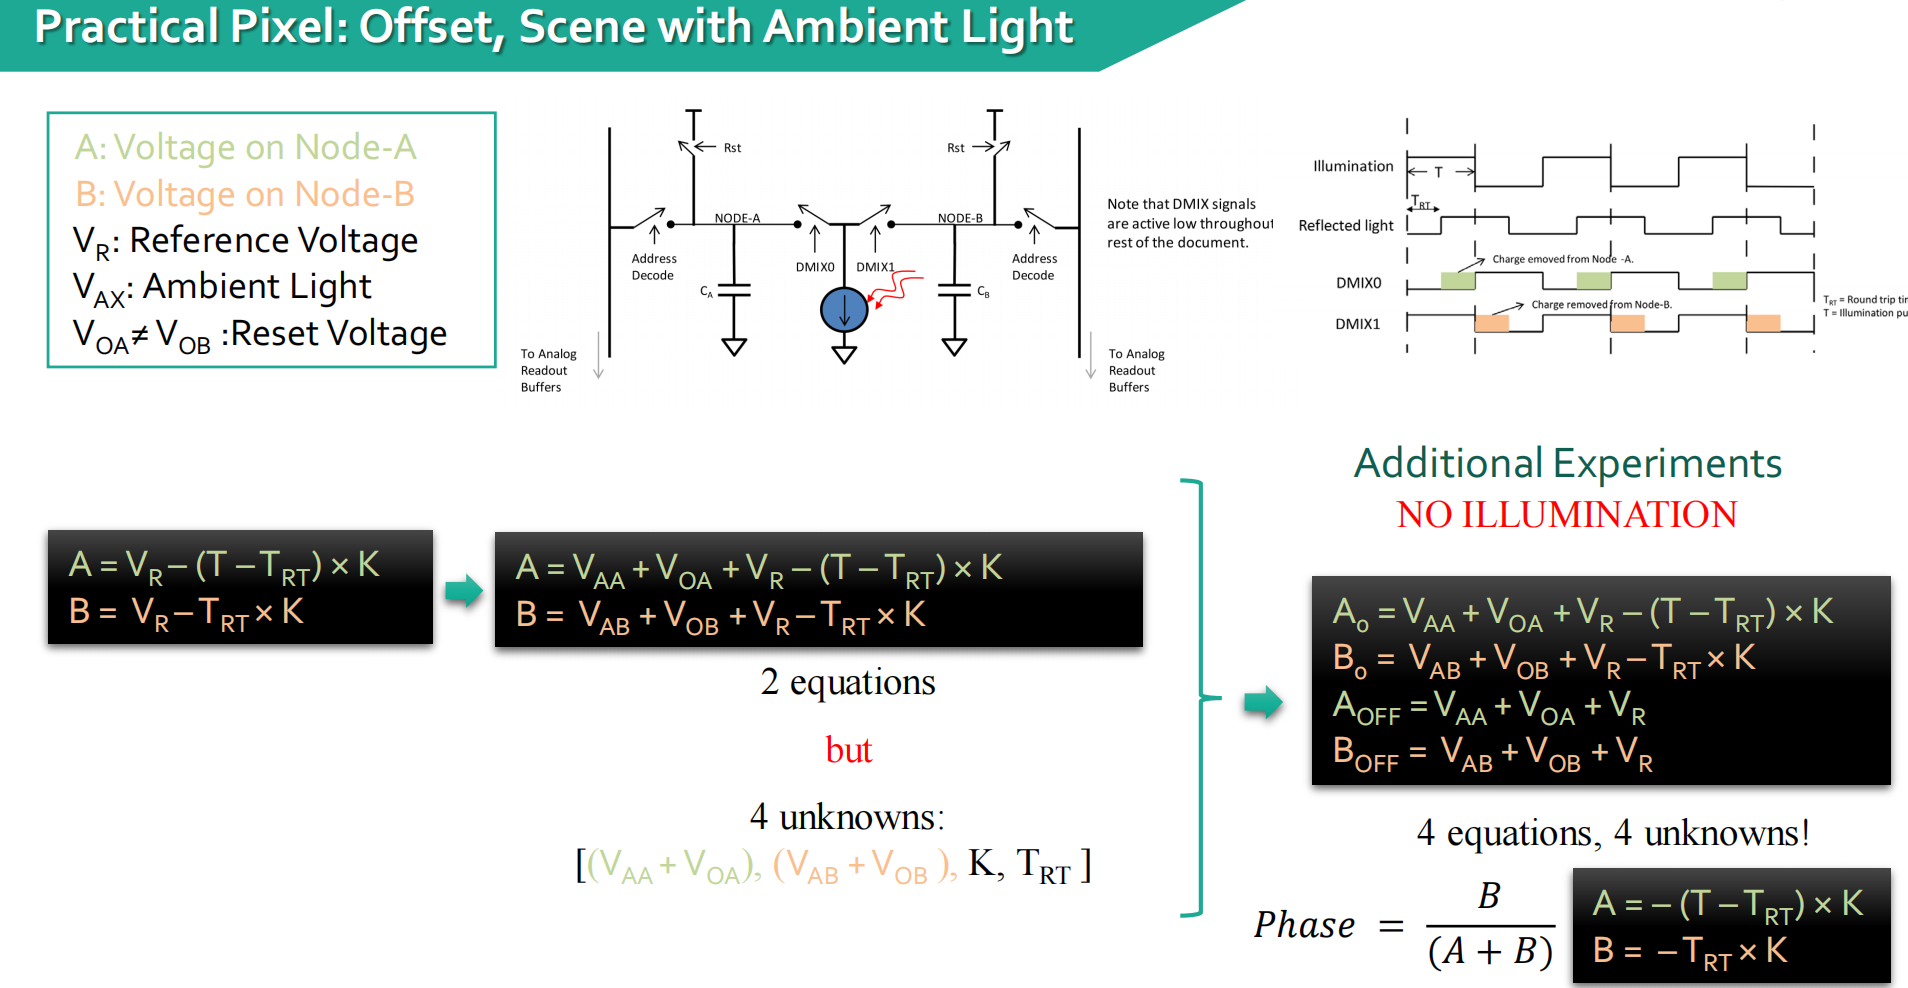 考虑实际场景中有offset、ambient light的情况 ⇒ 增加将曝光关掉之后的测量，通过联立四个式子进行求解